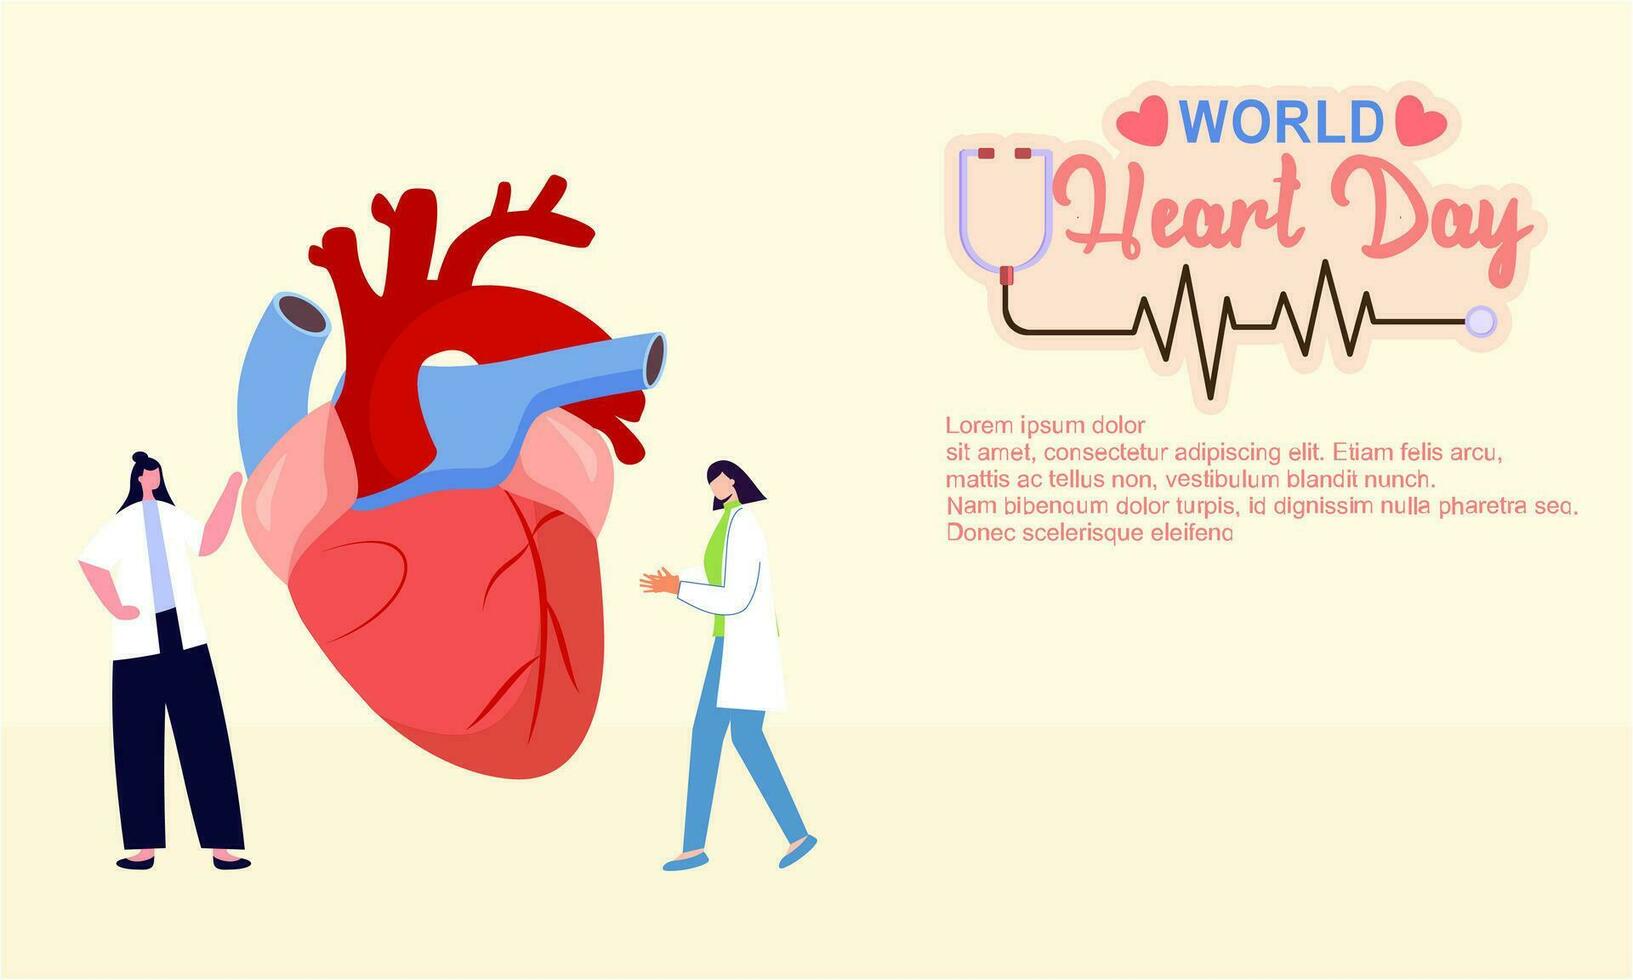 Welt Herz Tag Poster Kampagne im Karikatur Charakter Behandlung und Gesundheit Pflege Bewusstsein und eben Design beim 29 September vektor